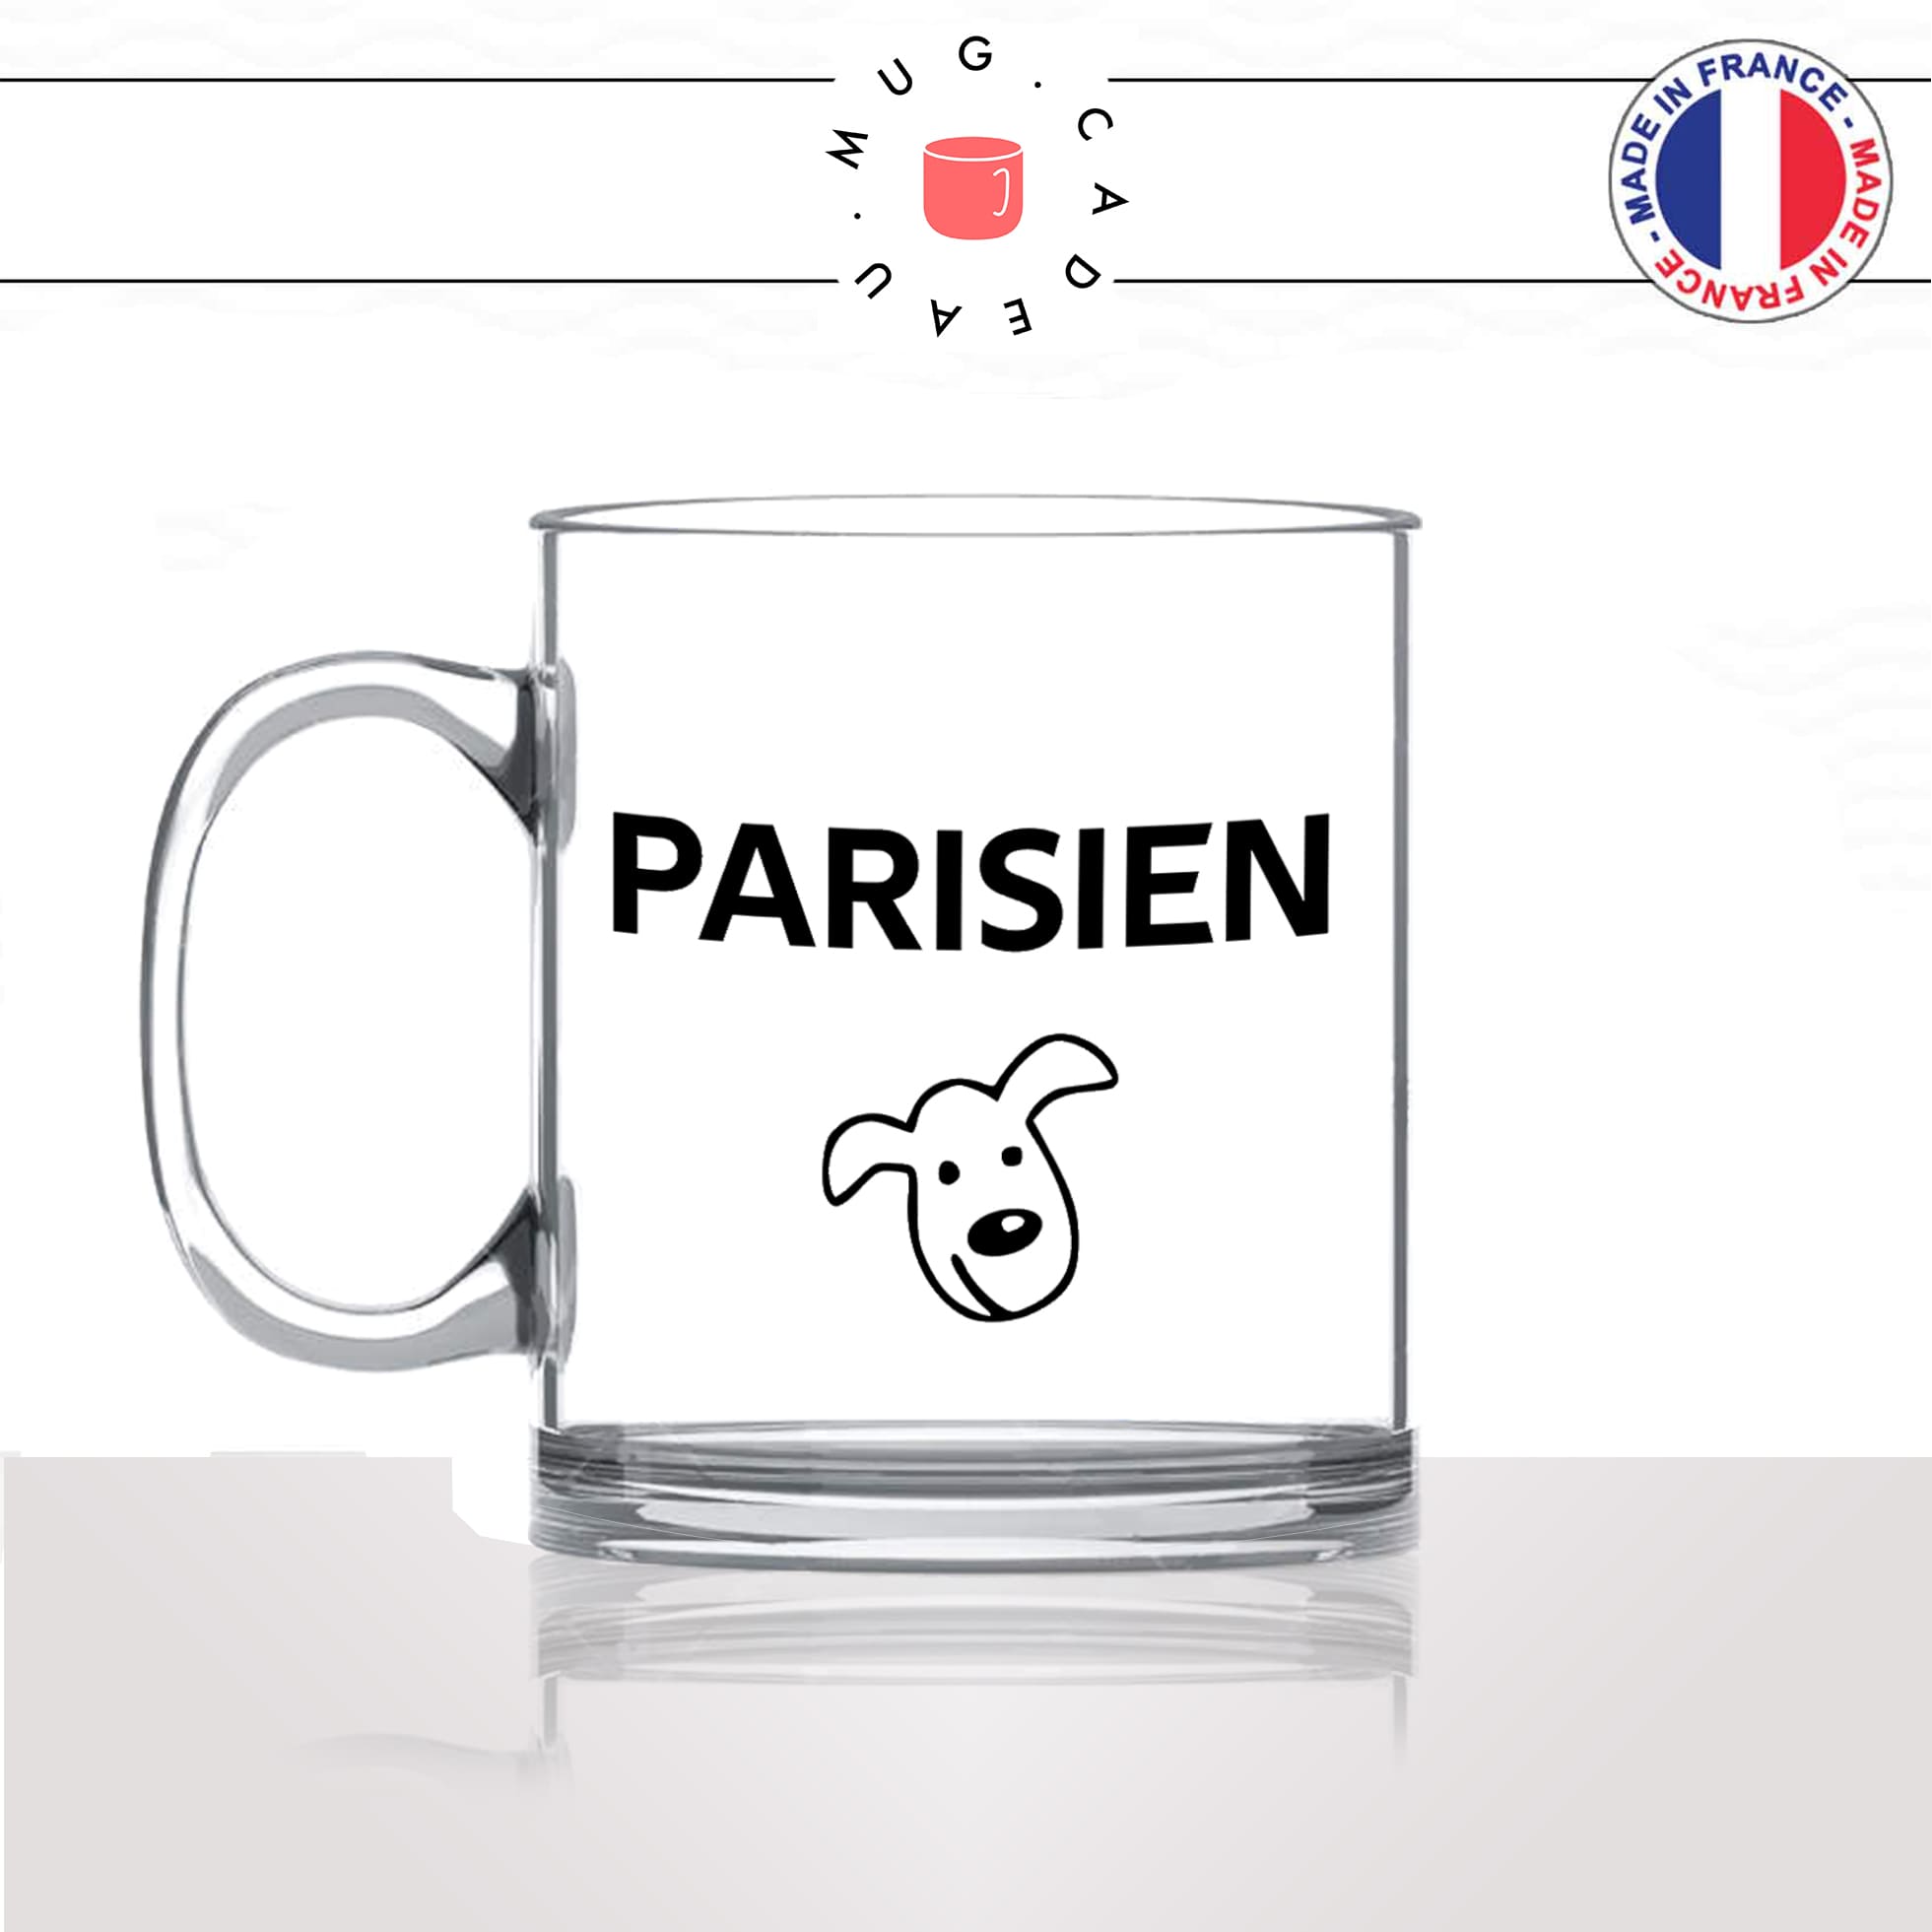 mug-tasse-en-verre-transparent-glass-parisien-tete-de-chien-parigot-tete-de-veau-citation-paris-francais-france-humour-idée-cadeau-originale-fun